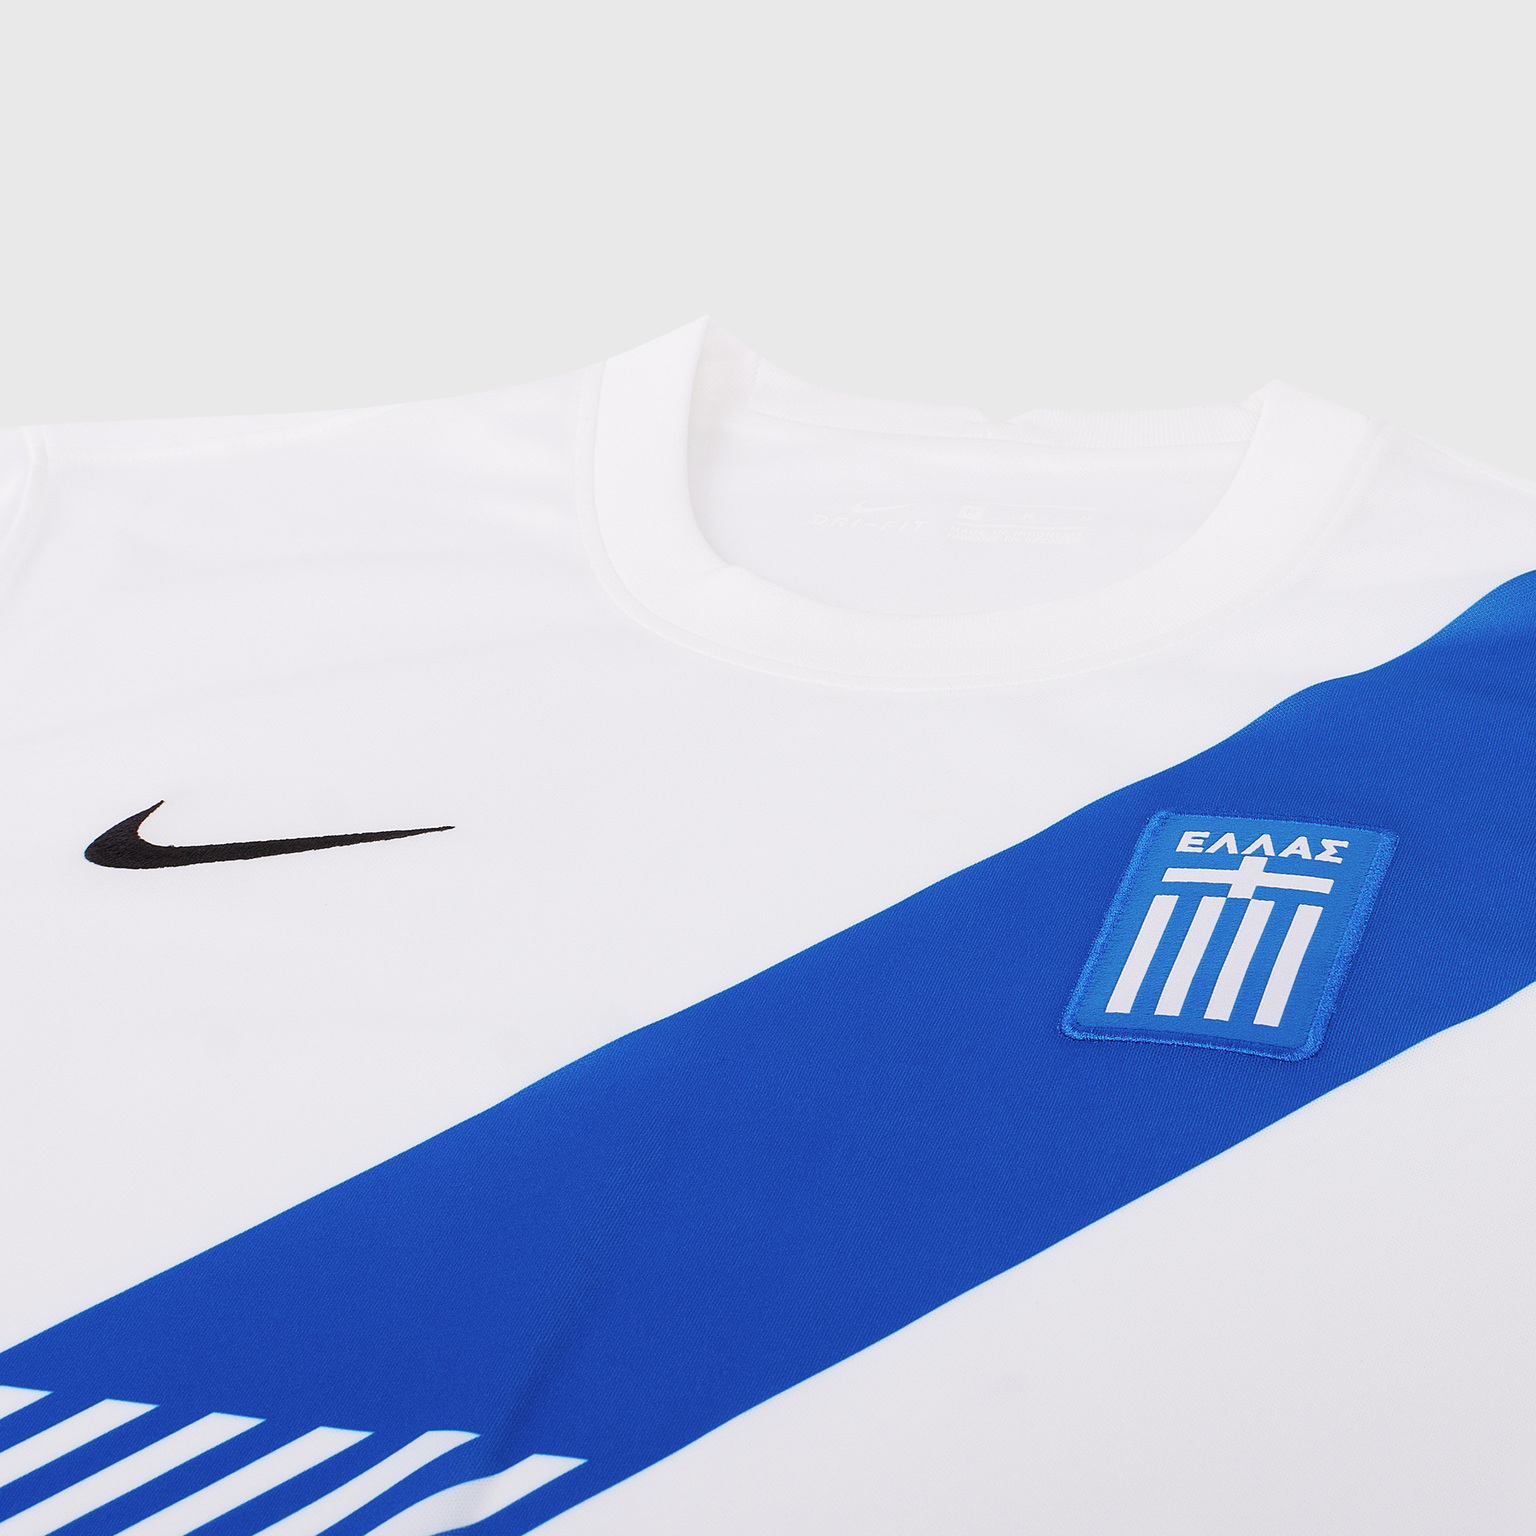 Футболка игровая домашняя Nike сборной Греции сезон 2020/21